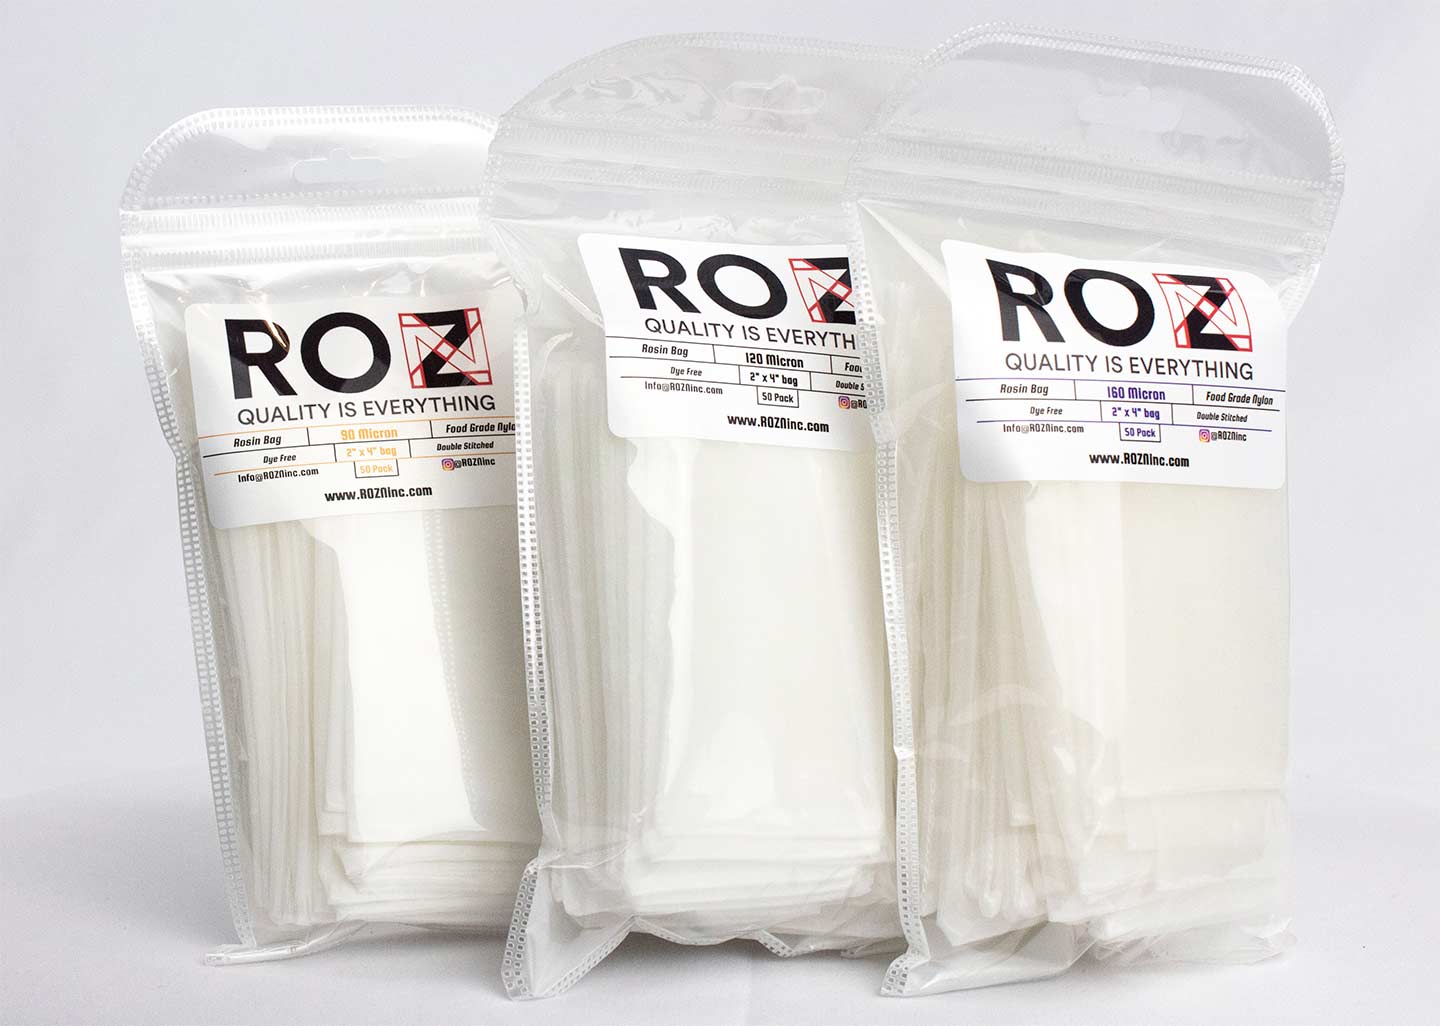 Rosin Press Bags - 5 micron - 2.5 x 4.5